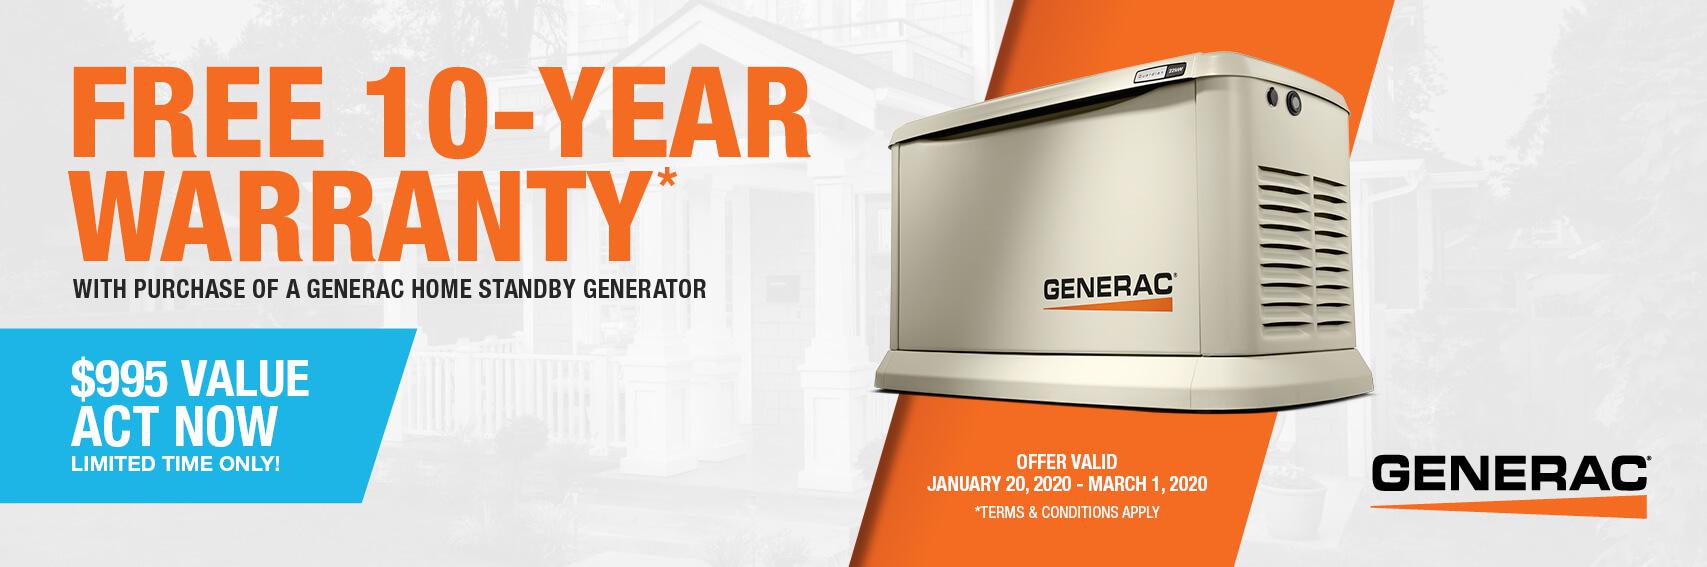 Homestandby Generator Deal | Warranty Offer | Generac Dealer | Whitman, MA